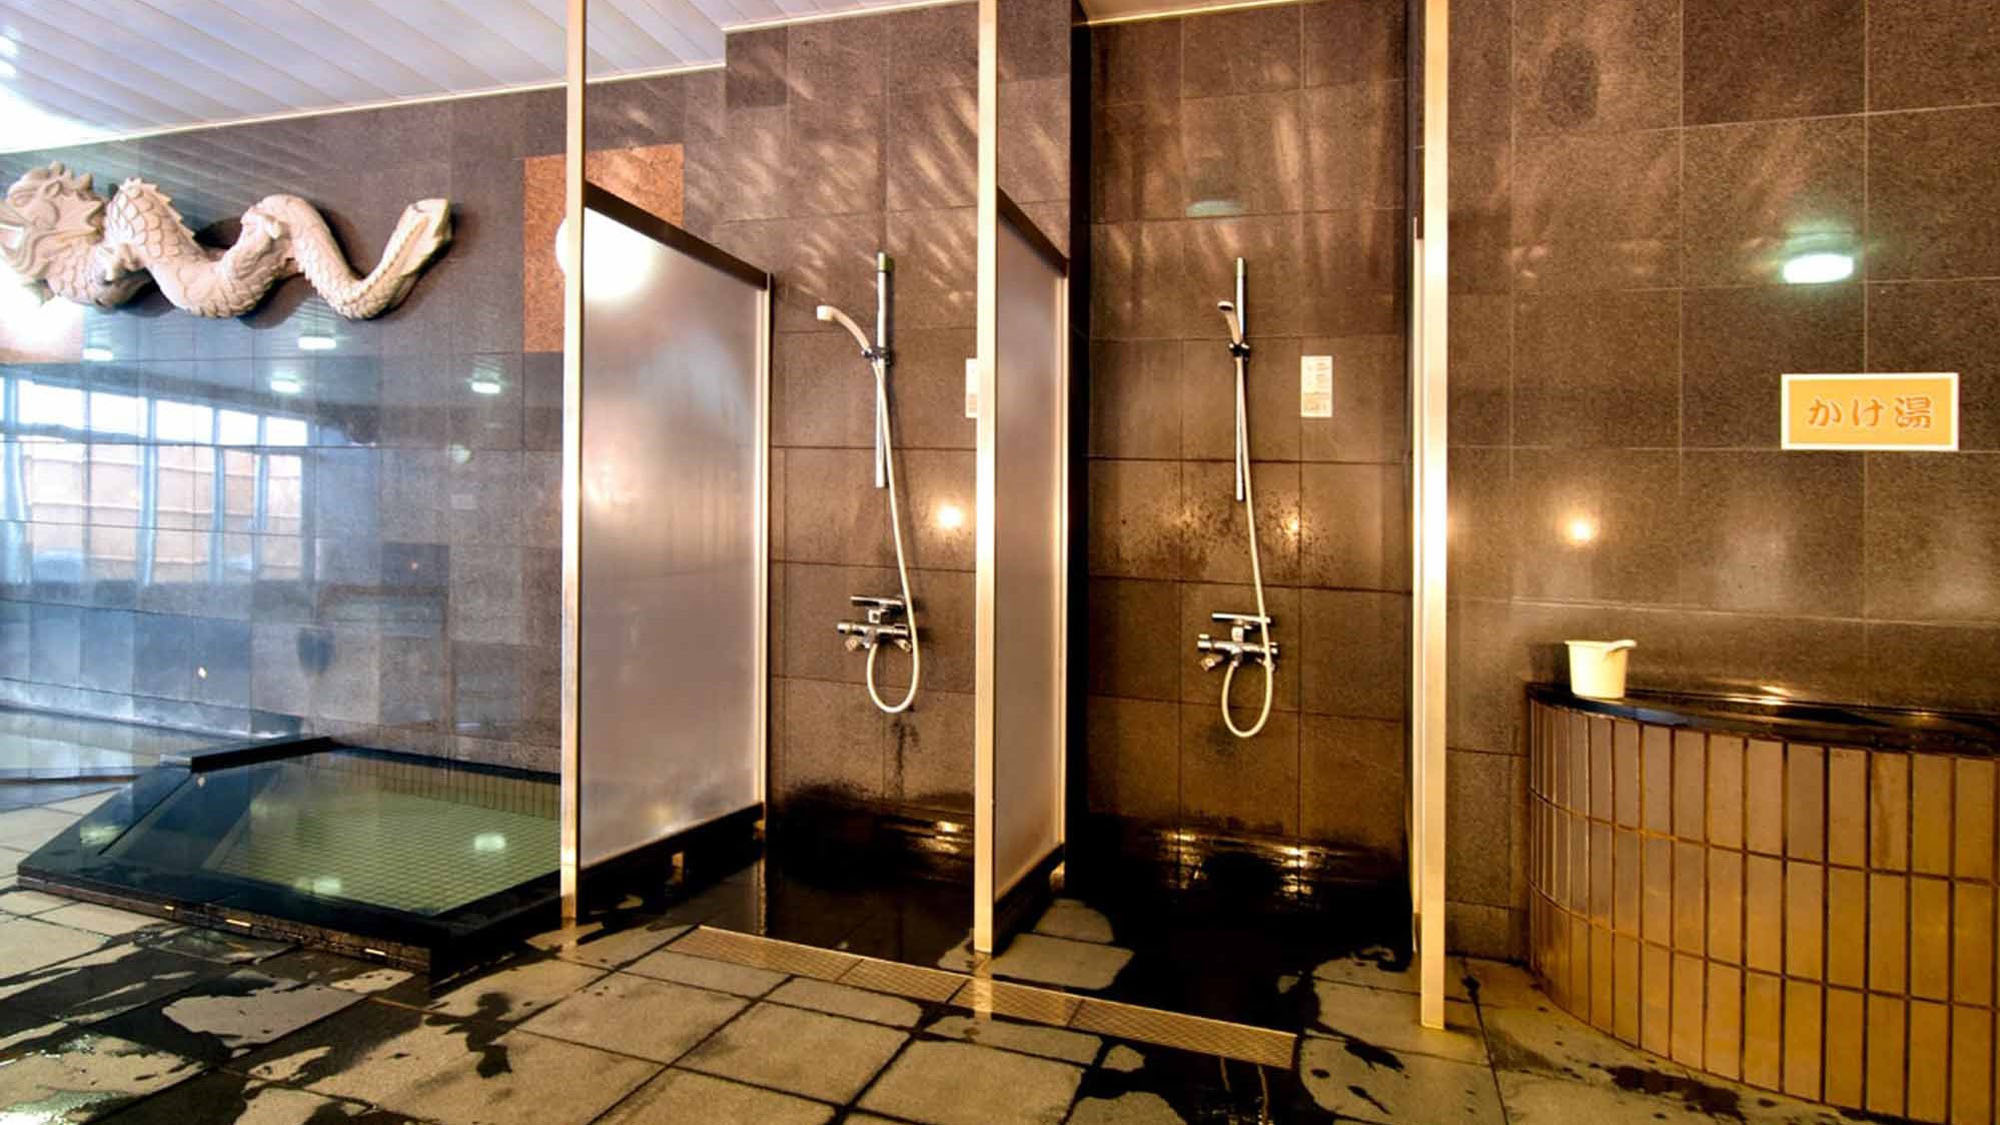 【大浴場】温泉成分に塩分が含まれておりますので、湯上りはシャワーで軽く洗い流してください。